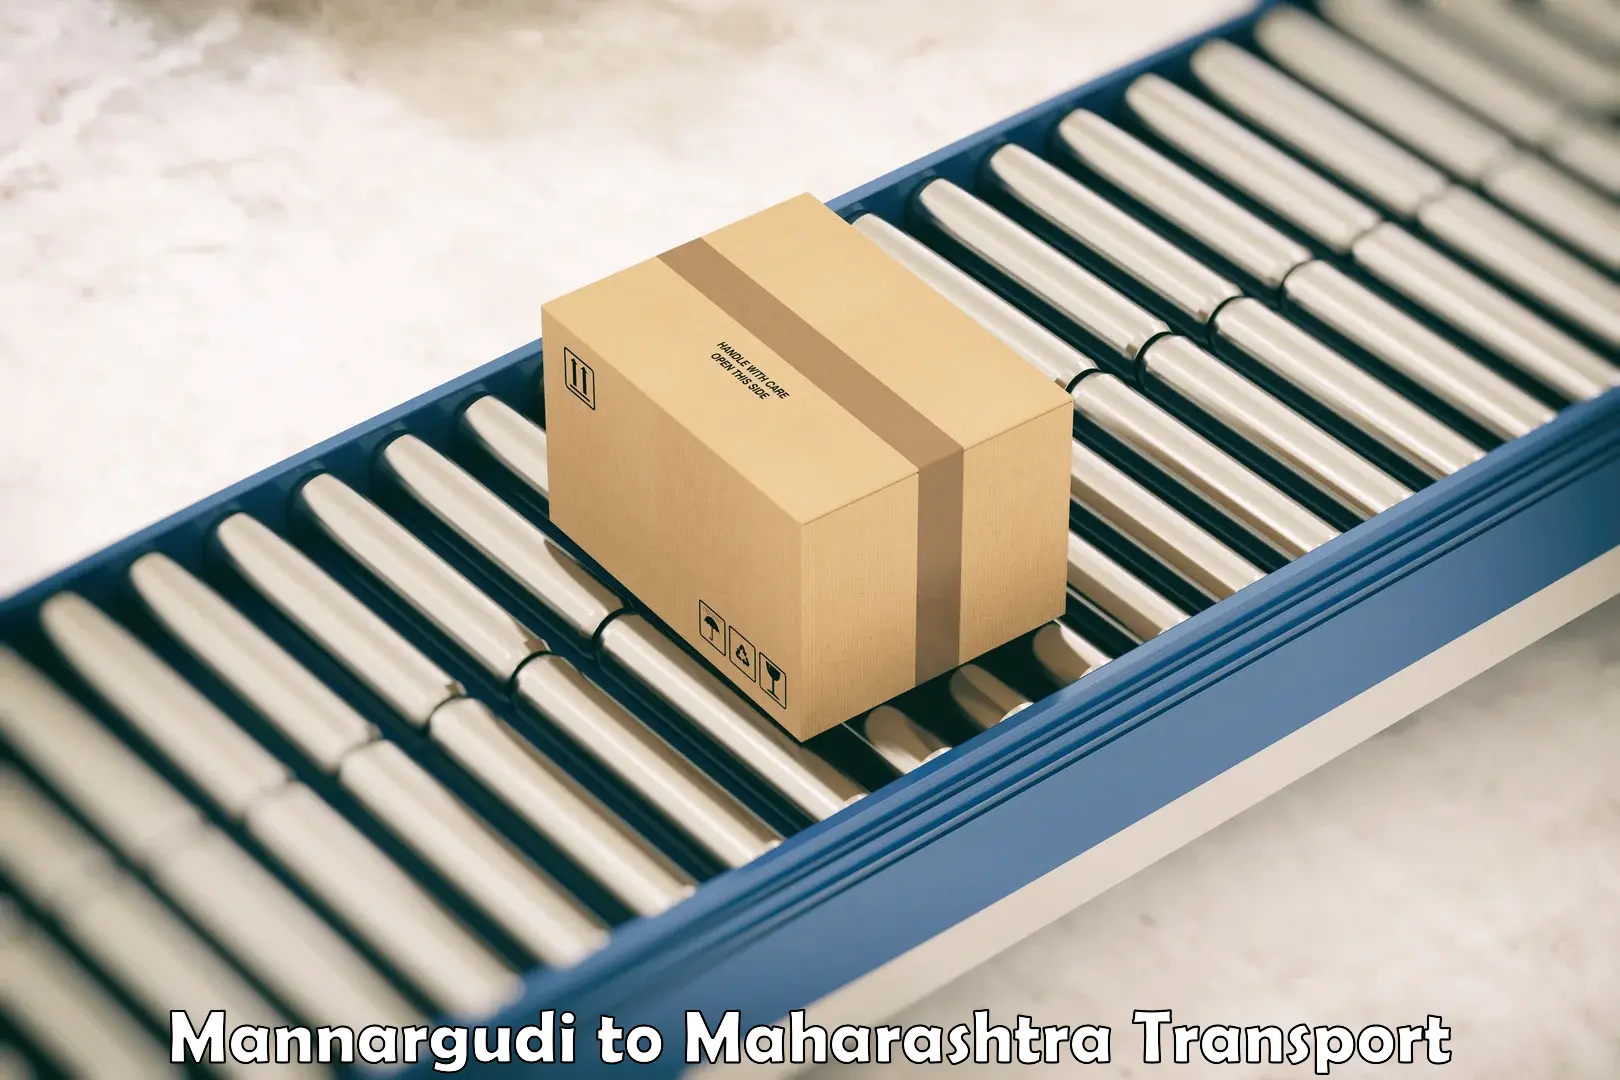 Container transport service Mannargudi to Mahad